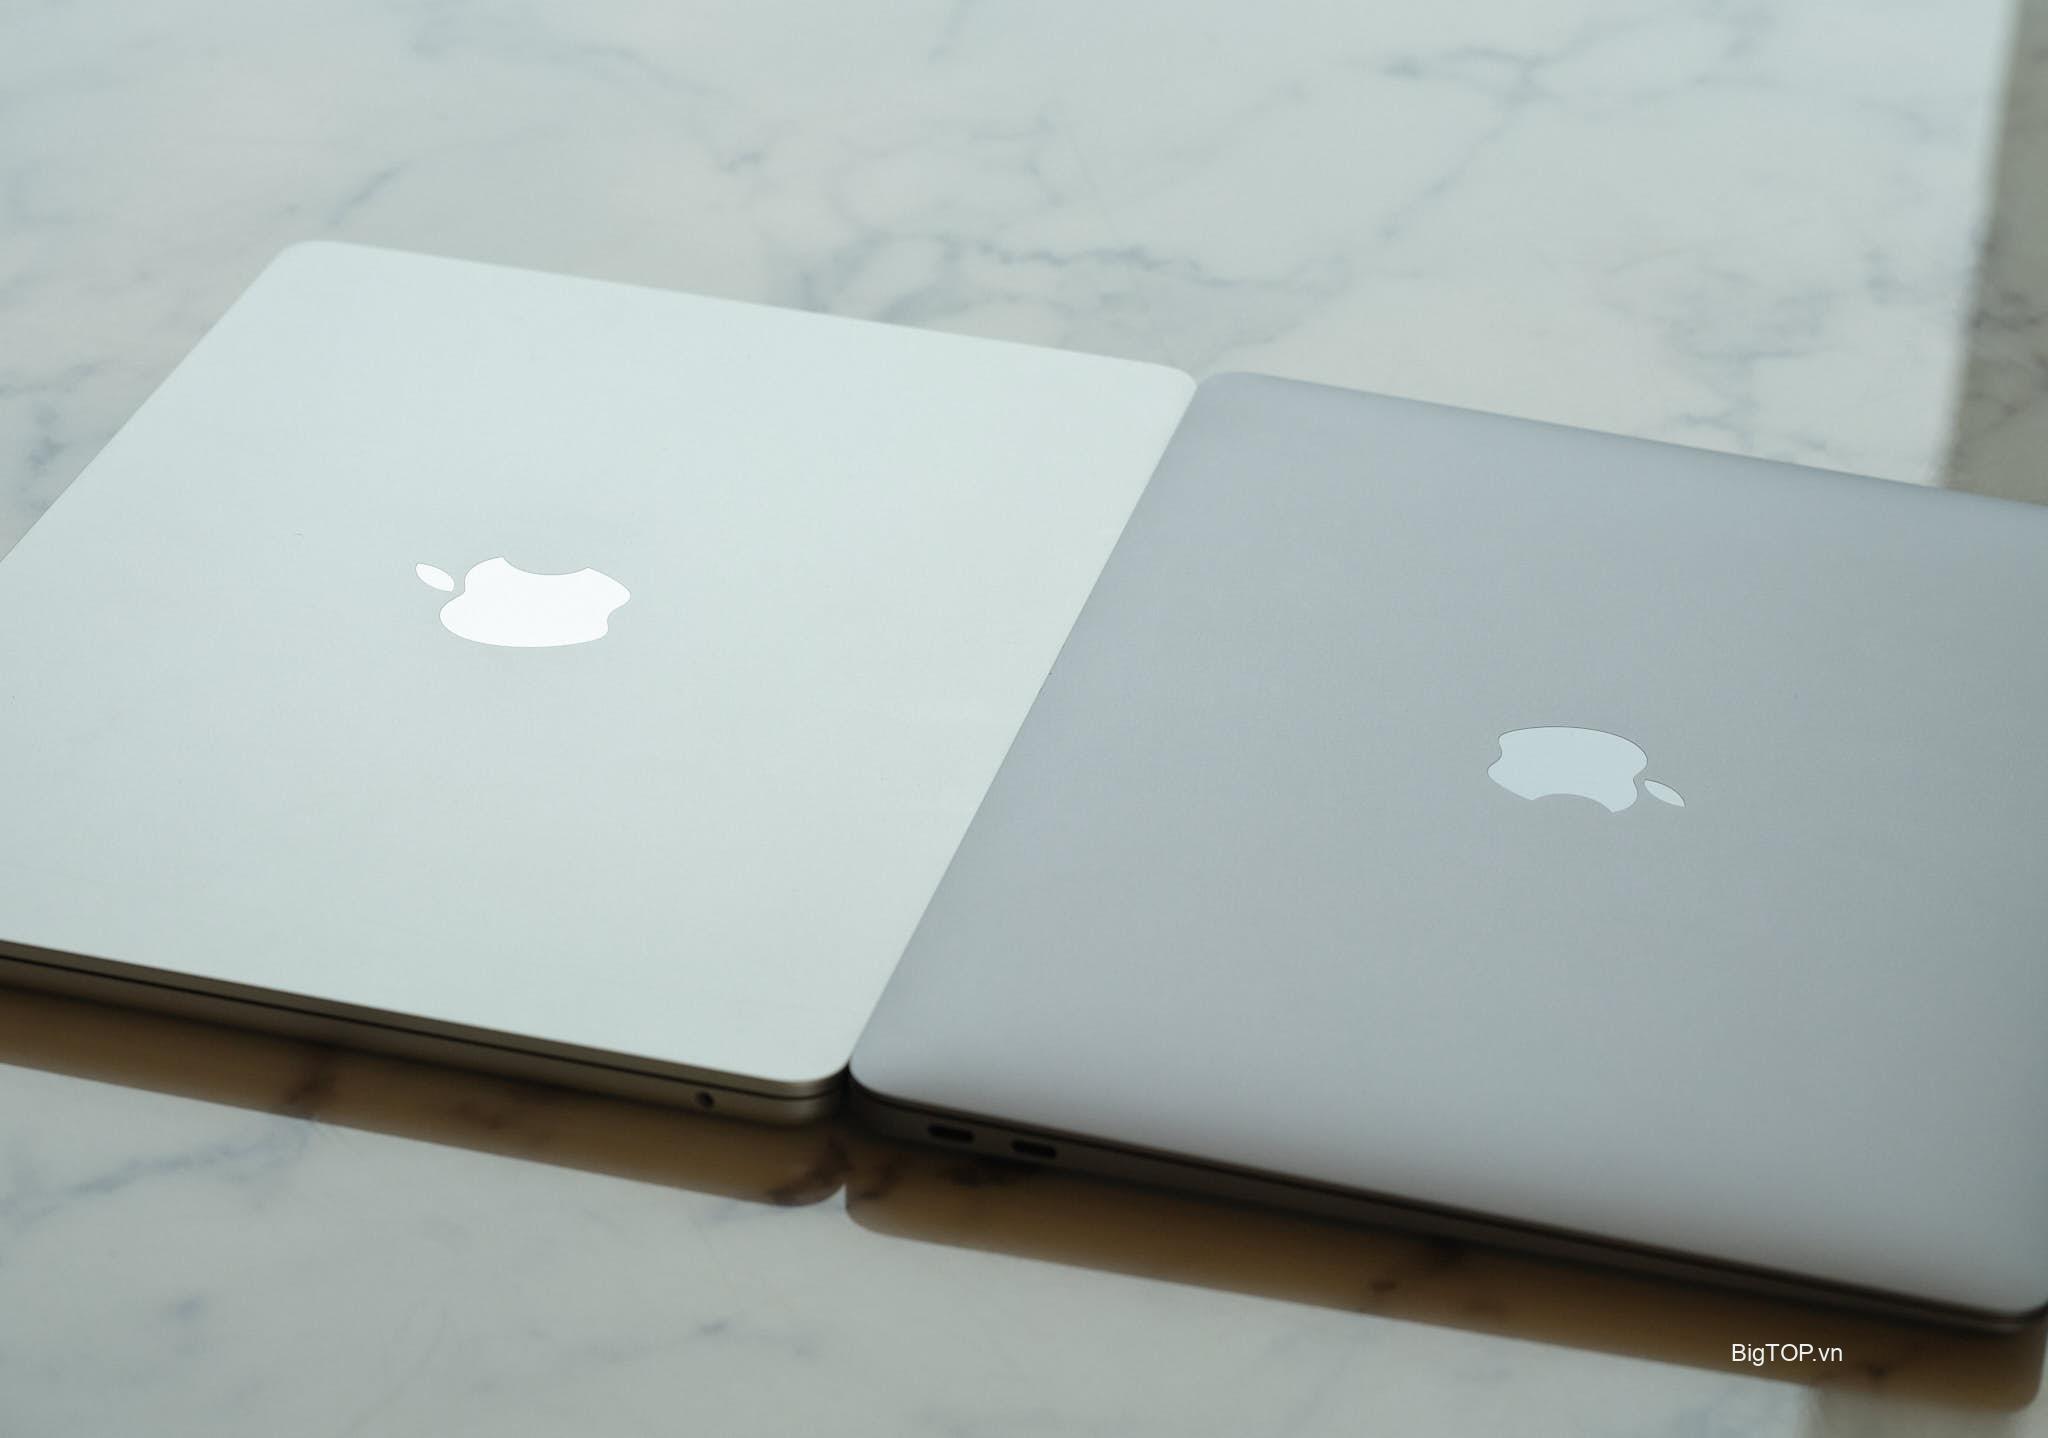 Apple MacBook Air M2 Silver so với MacBook Air M1 Space Gray